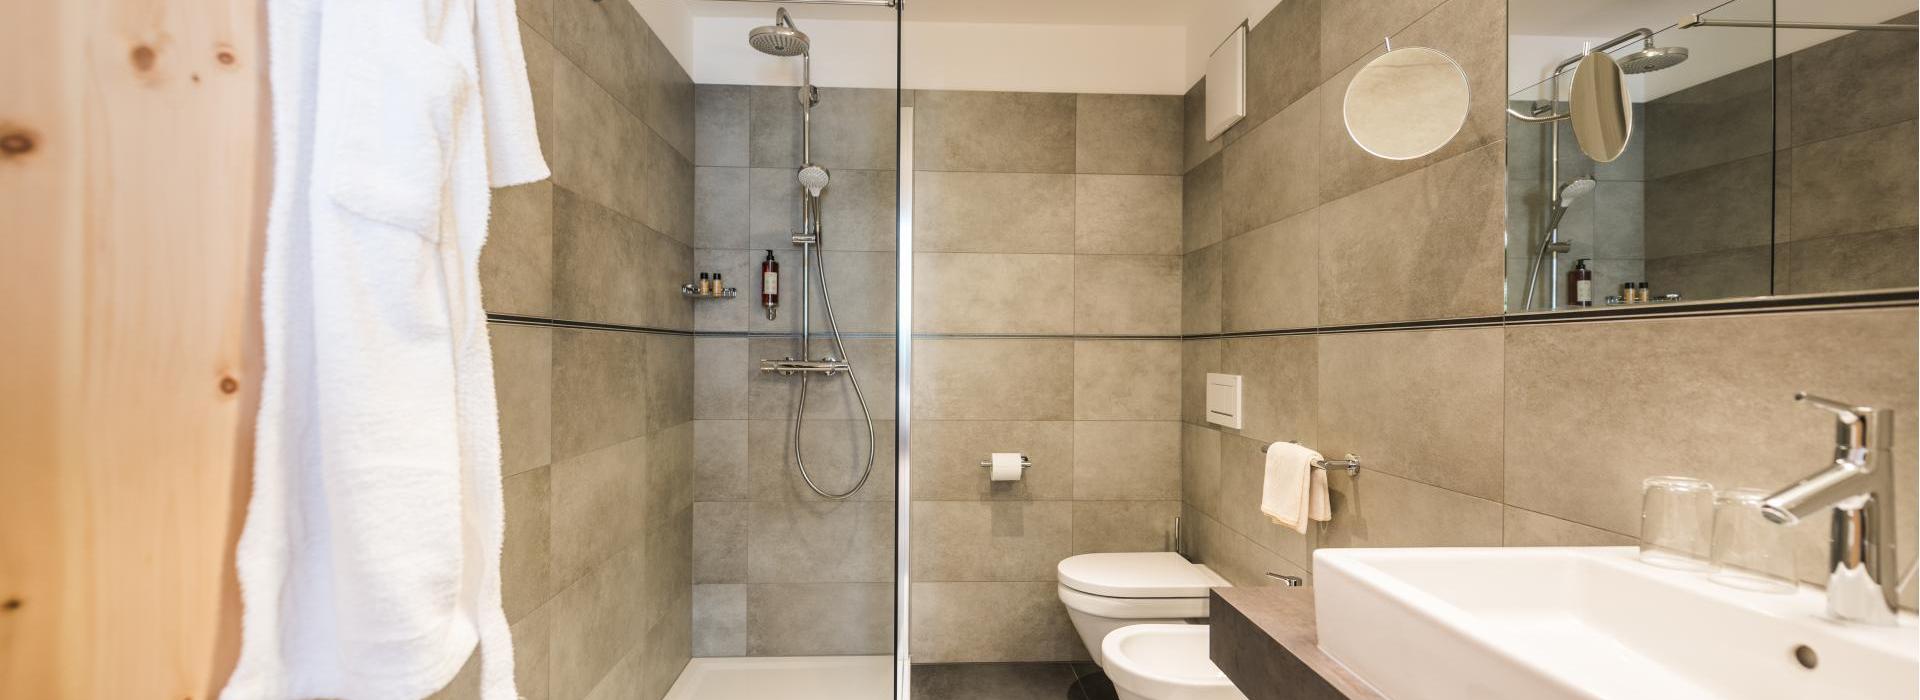 Badezimmer der Juniorsuite mit Dusche, Waschtisch, WC und Bidet